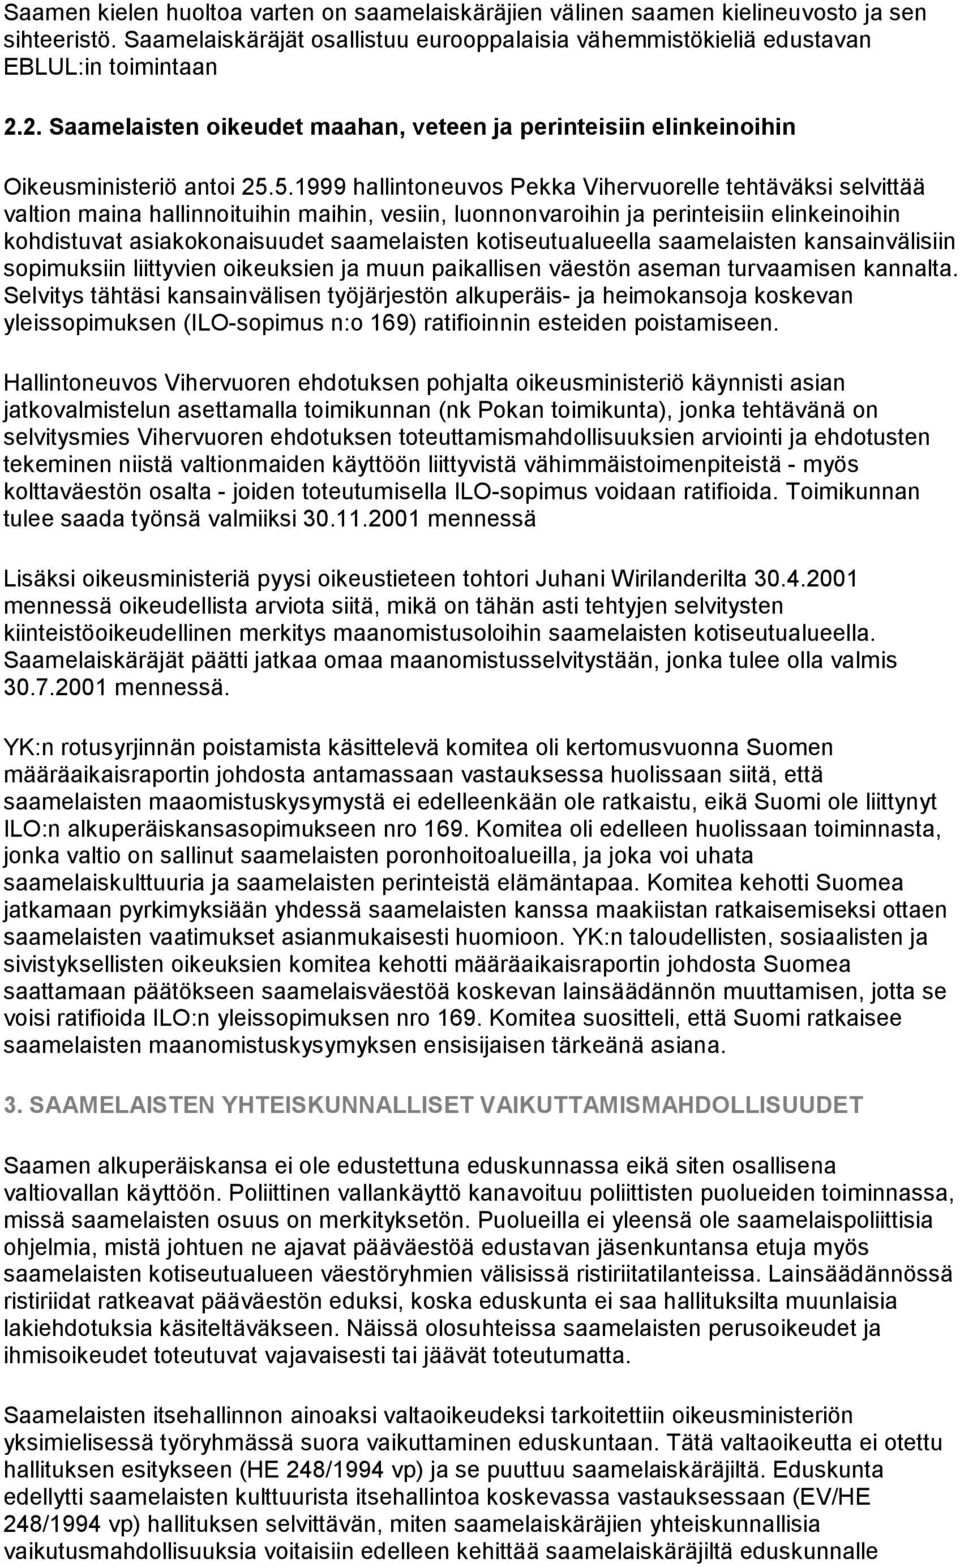 5.1999 hallintoneuvos Pekka Vihervuorelle tehtäväksi selvittää valtion maina hallinnoituihin maihin, vesiin, luonnonvaroihin ja perinteisiin elinkeinoihin kohdistuvat asiakokonaisuudet saamelaisten